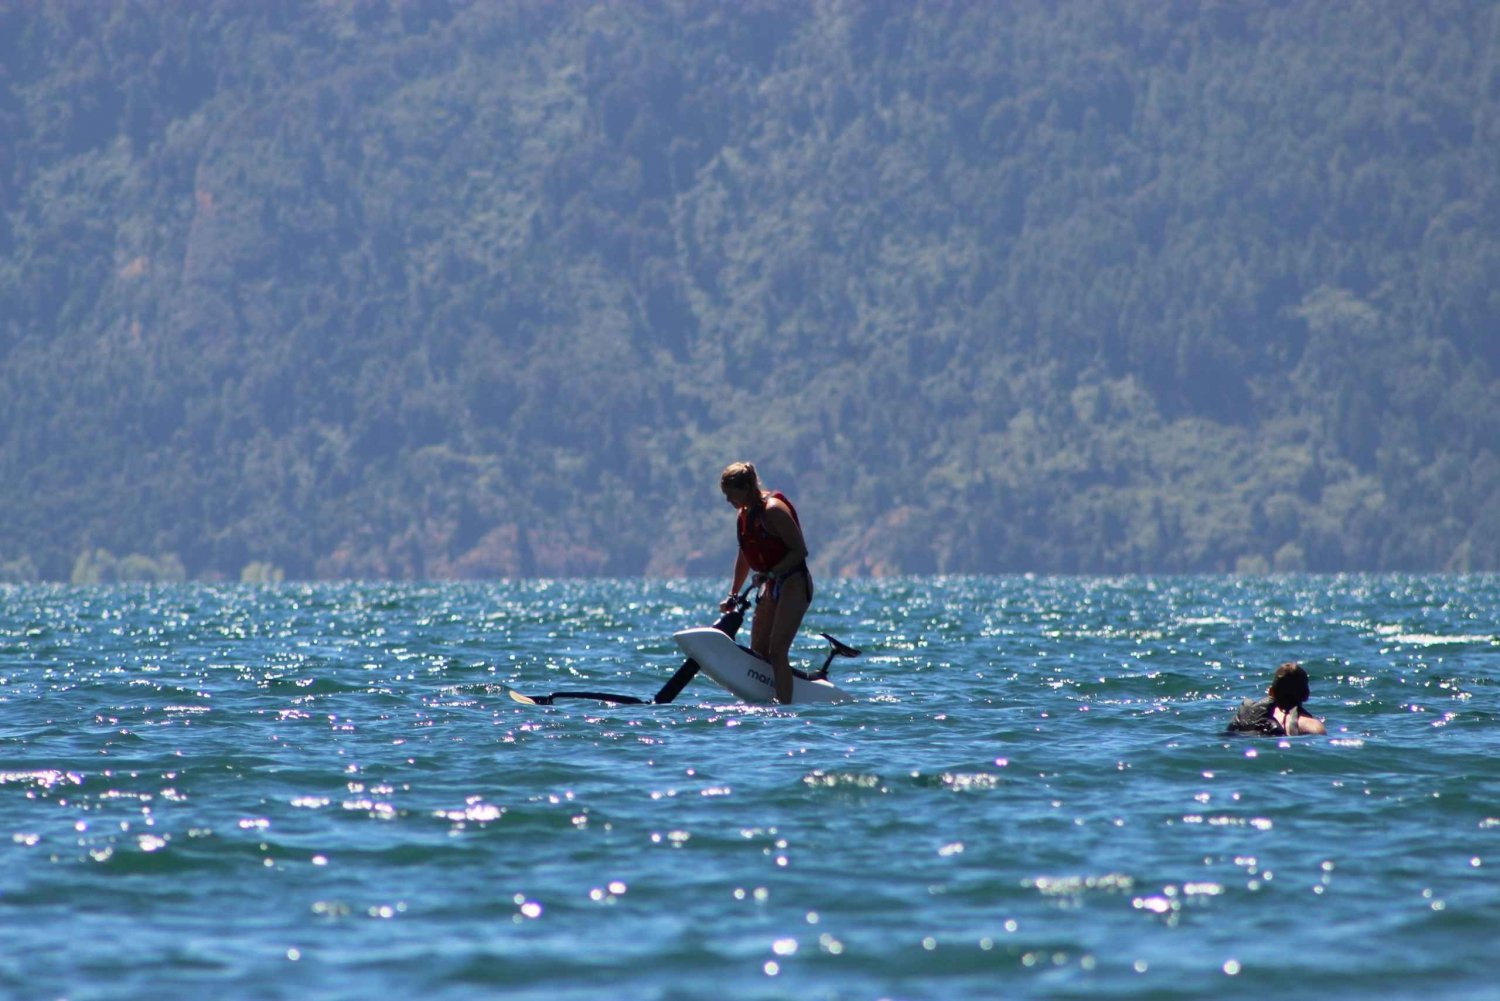 Pucón, Chile: SL3: Kierrä järvellä vesipyörällä, SL3